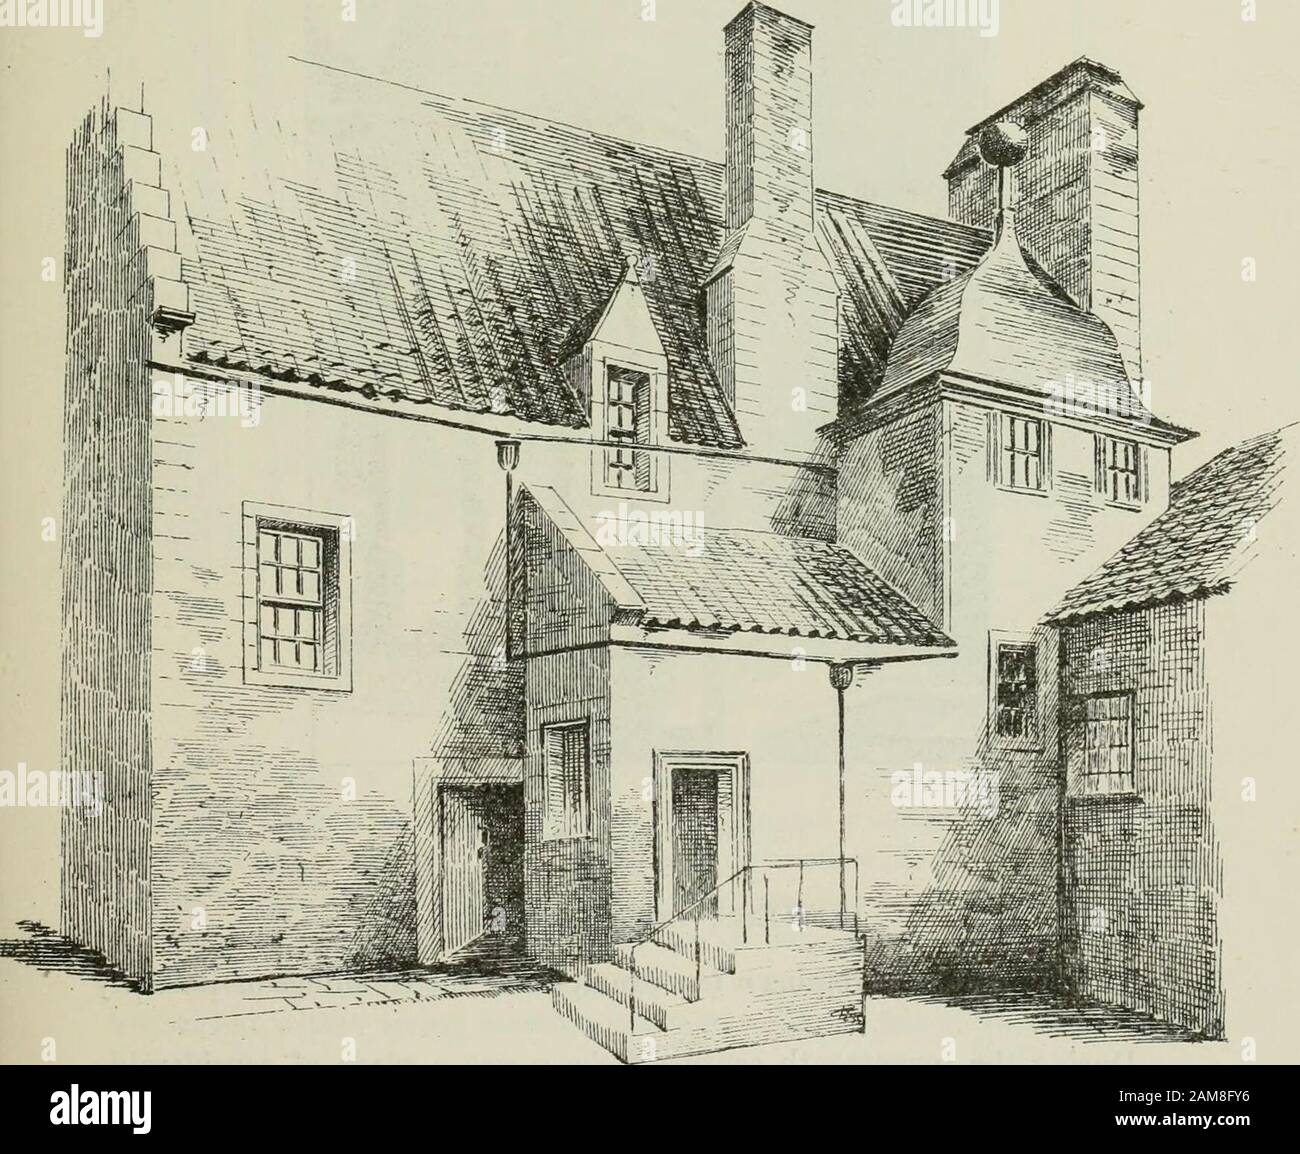 La arquitectura castellada y doméstica de Escocia, desde el siglo XII hasta el siglo XVIII . Fio. 1156.—BONESS, HOUSE IN, CUARTO PERÍODO BO NESS PUEBLOS AL SUR DEL FORTH. Los pueblos al sur De La Forth han mantenido el ritmo más igualitario con el marchof piogress en tiempos modernos que las comunidades más apartadas en el norte del Frith, y han perdido así más de su carácter distintivo antiguo. En Edimburgo y Leith no cabe duda de que todavía hay muchas estructuras antiguas que interieren, pero la arquitectura de las ciudades más pequeñas ha cambiado y modernizado casi por completo. Foto de stock